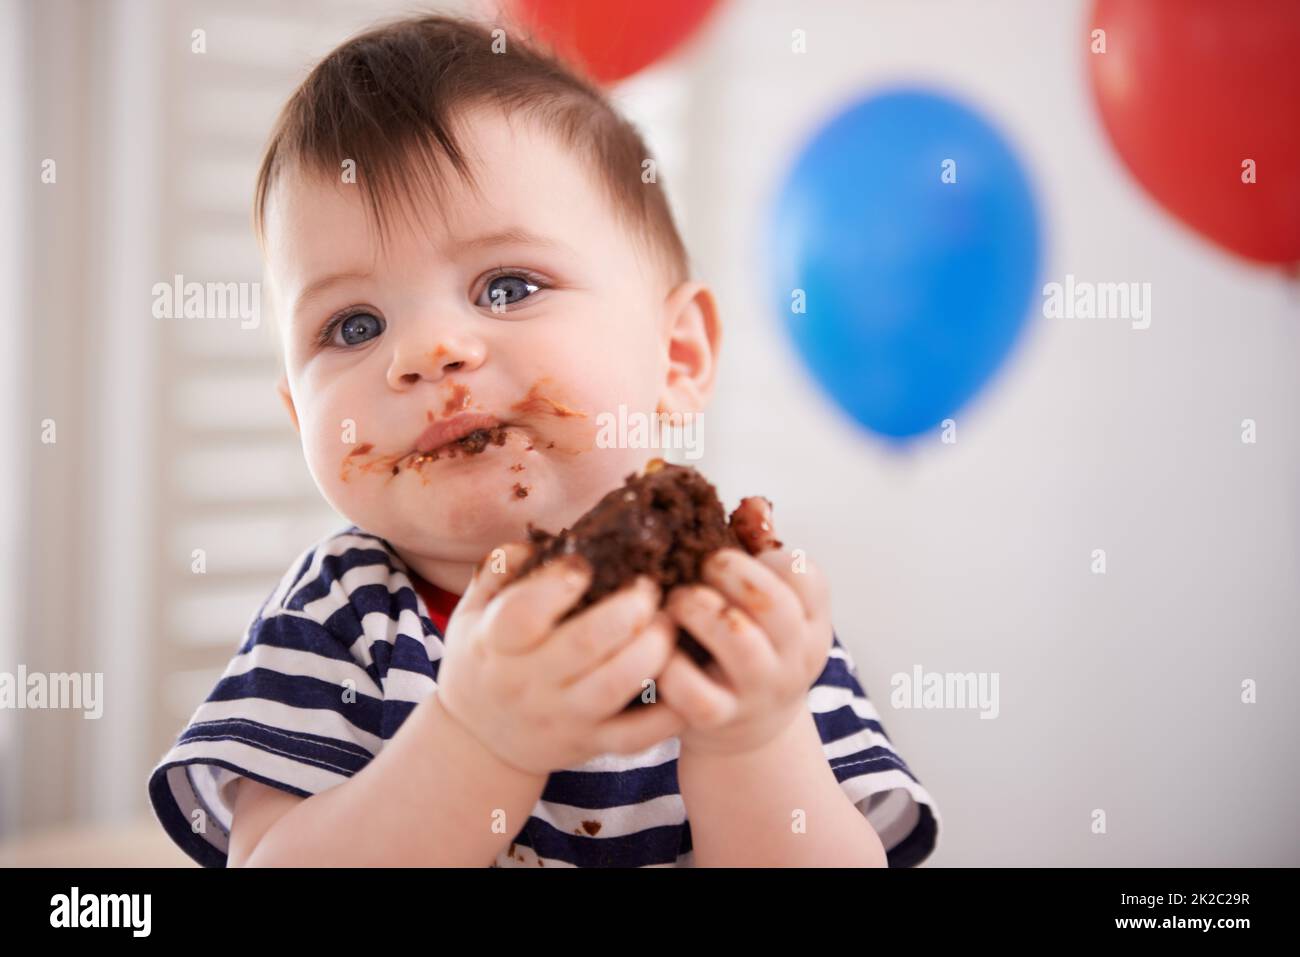 Es ist sein Geburtstag... Hes durfte sich verwöhnen lassen. Aufnahme eines kleinen Jungen, der an seinem Geburtstag Kuchen isst. Stockfoto